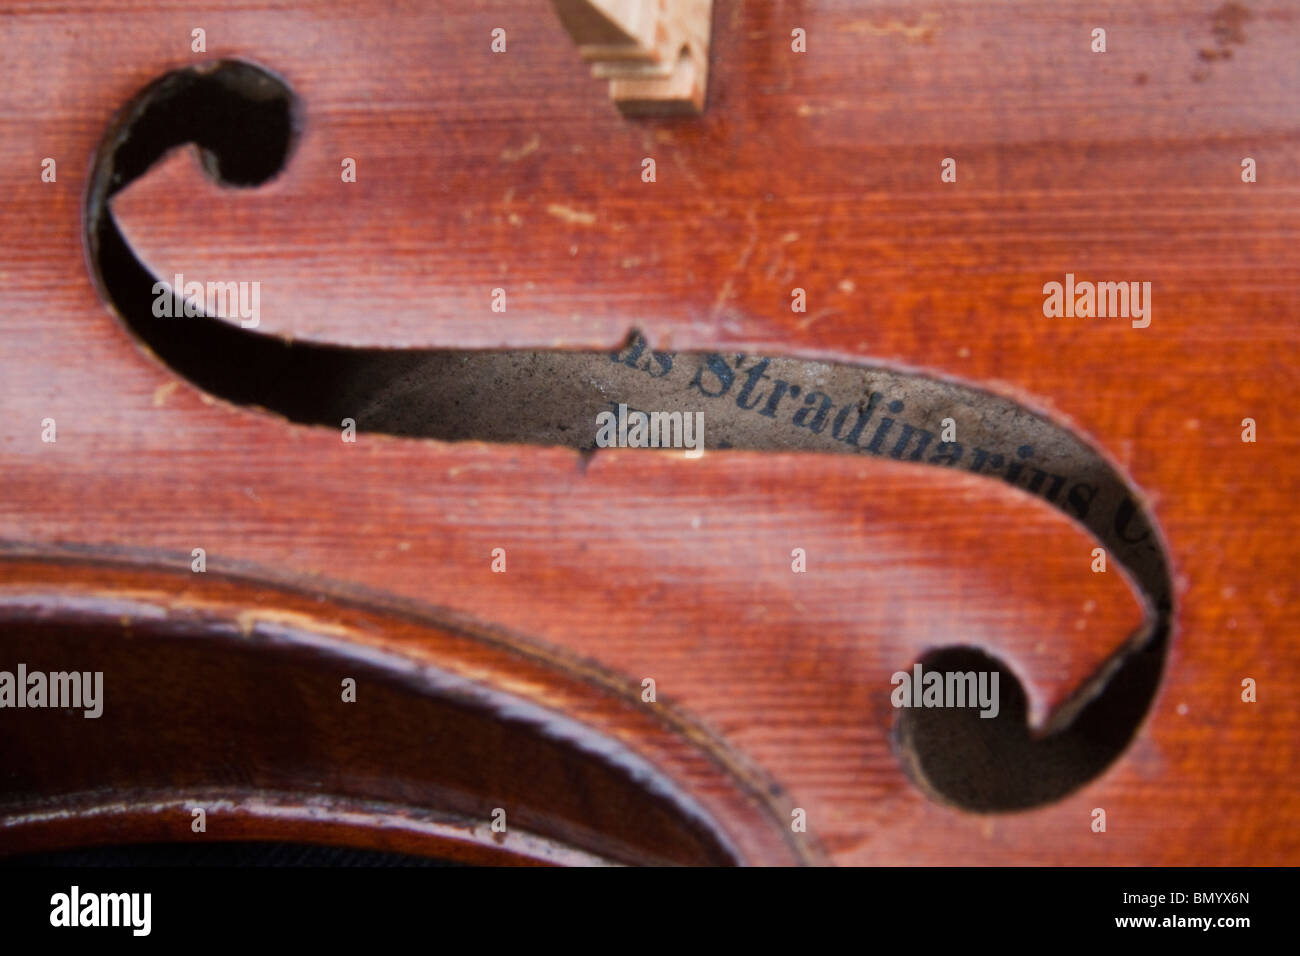 Un violon Stradivarius, et les détails de l'intérieur label Antonius Stradivarius Cremonensis. Cremona 104943 Horizontal Banque D'Images